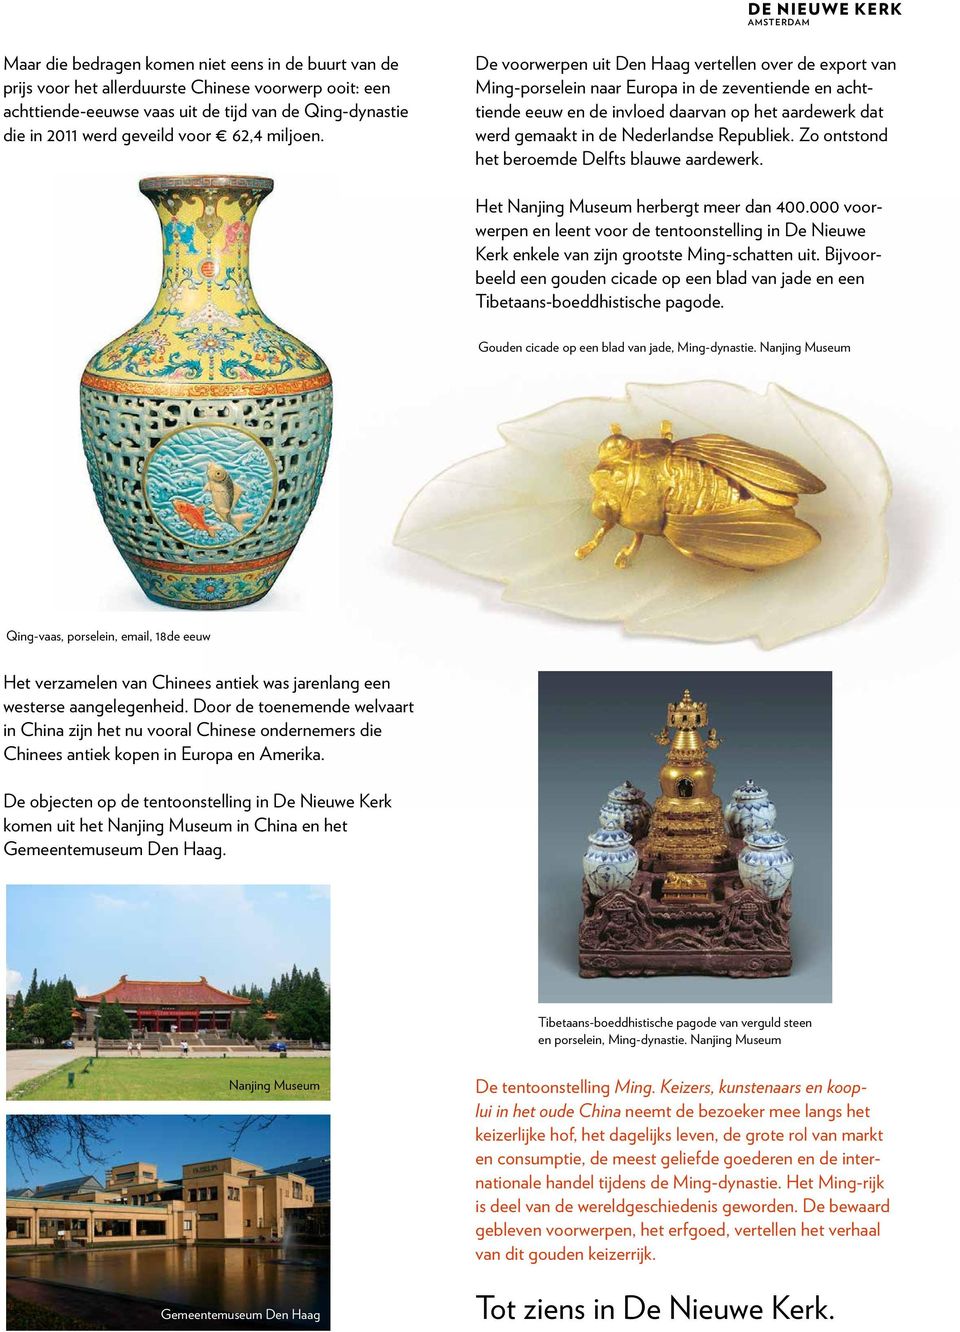 De voorwerpen uit Den Haag vertellen over de export van Ming-porselein naar Europa in de zeventiende en achttiende eeuw en de invloed daarvan op het aardewerk dat werd gemaakt in de Nederlandse